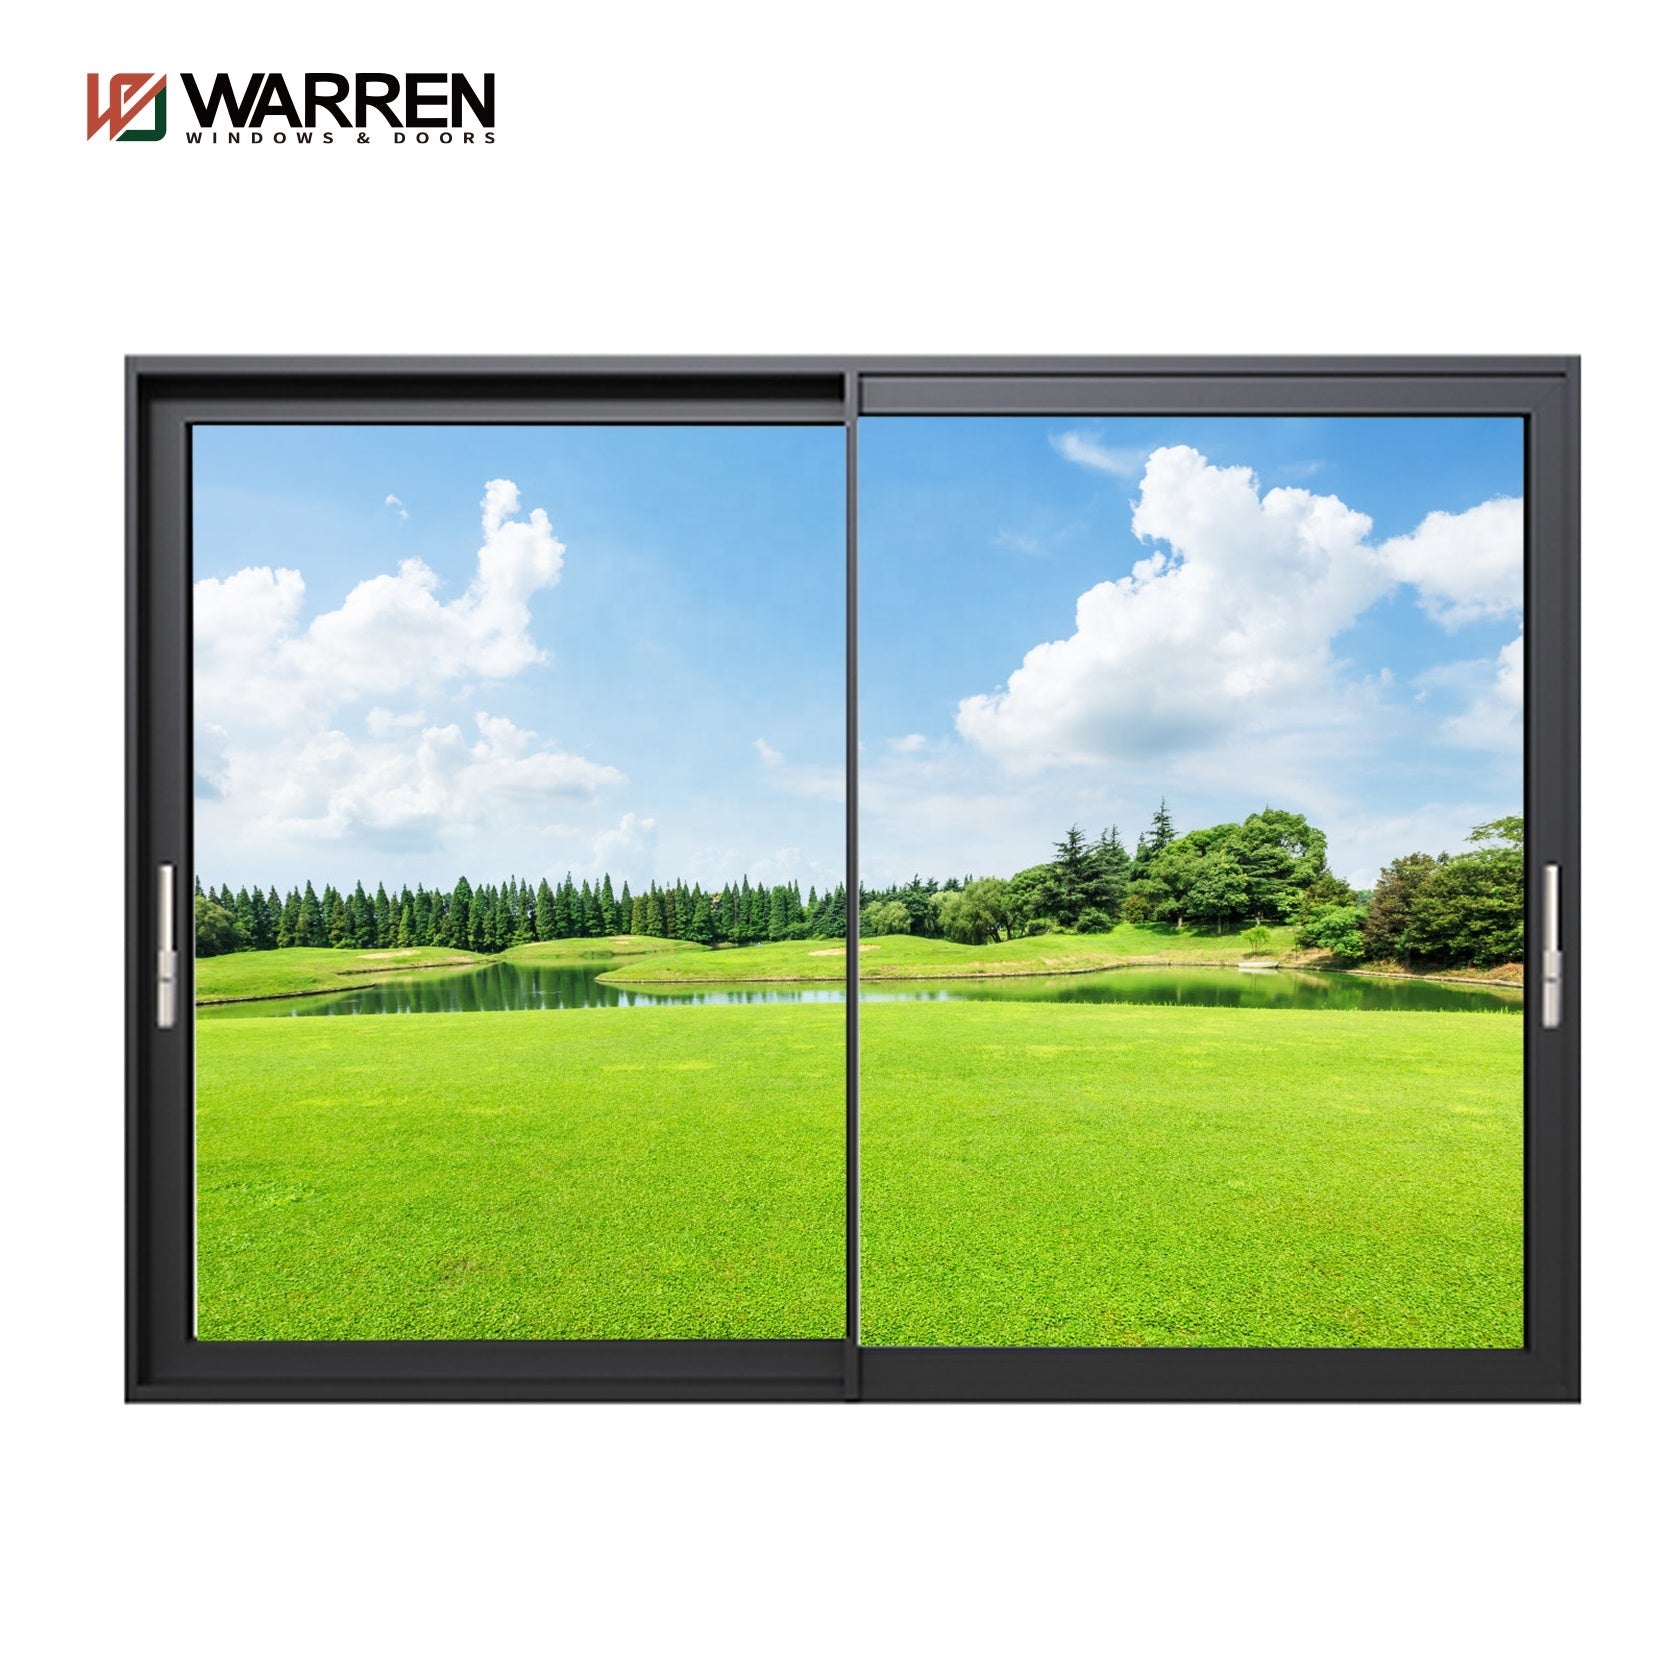 Warren 96 x 80 Sliding Patio Door Black Exterior Sliding Glass Doors 96 x 80 Cost